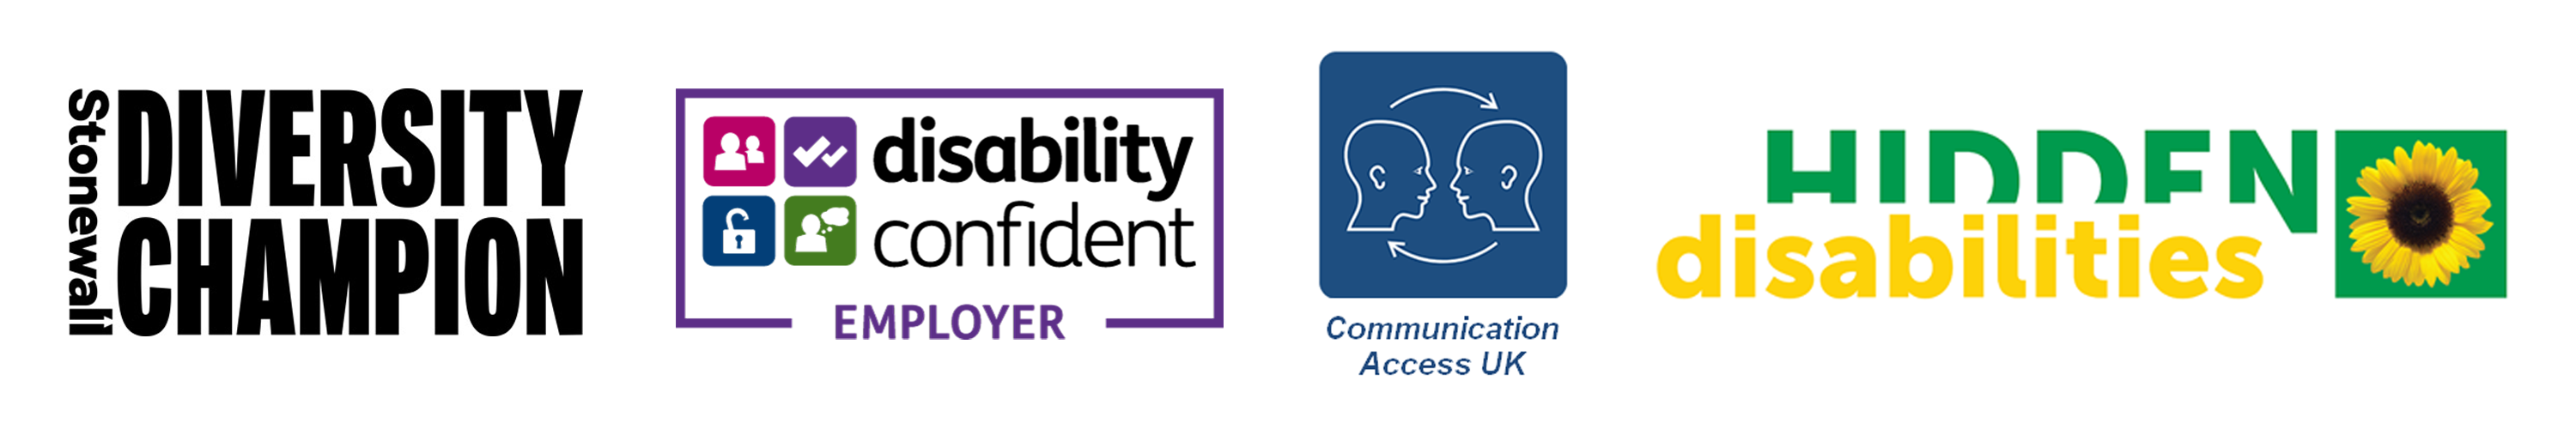 Stonewell, Disabiltiy confident-employer, communication access uk, Hidden disabilities logo